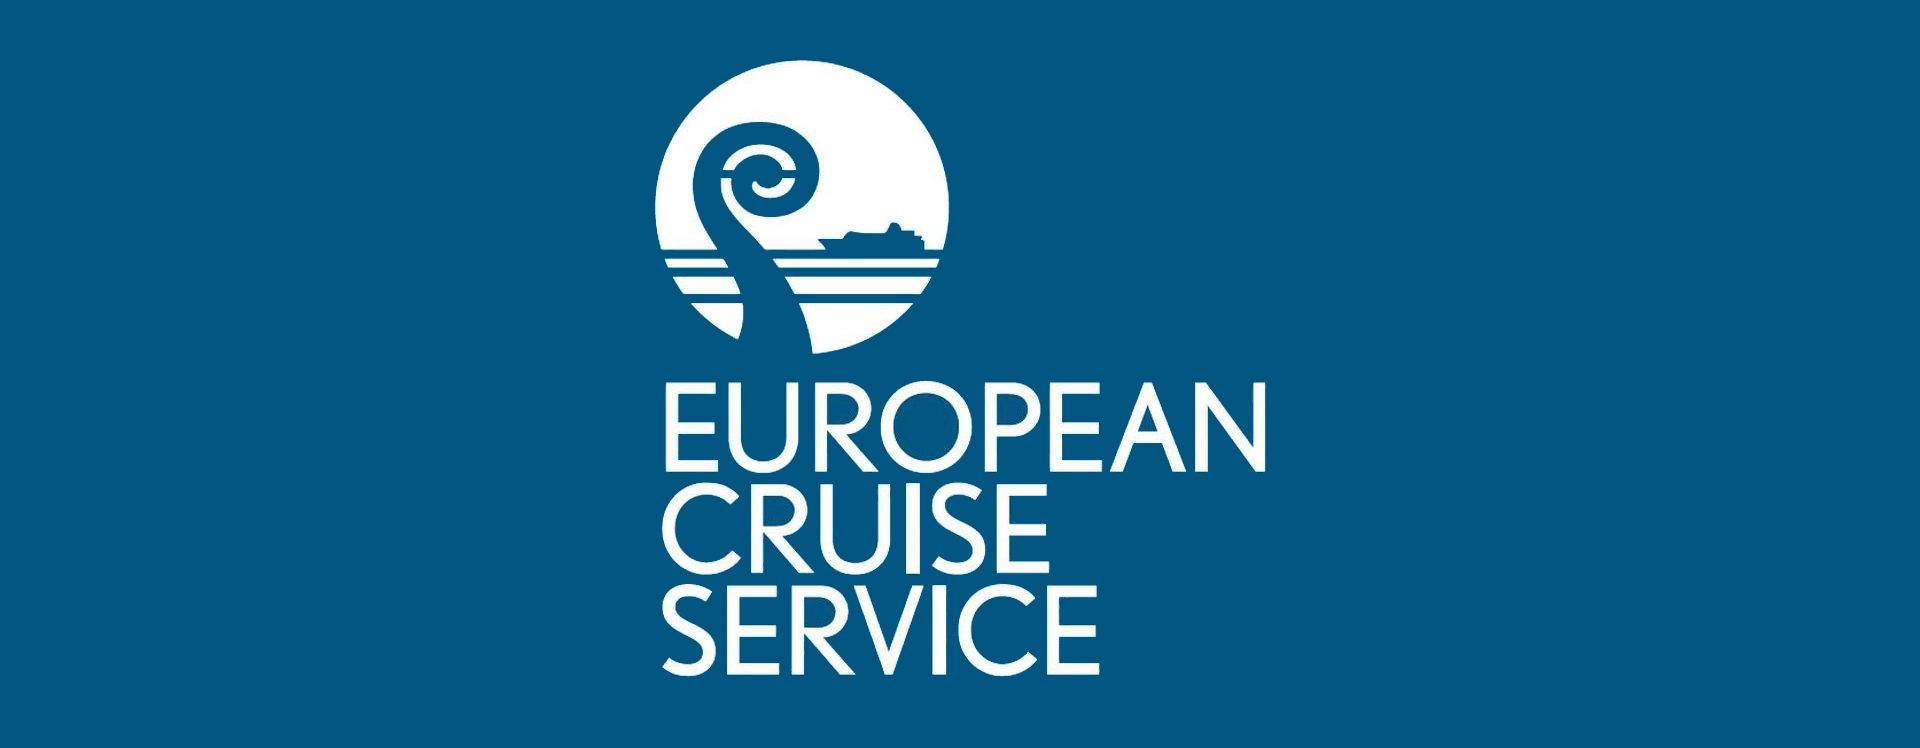 European Cruise Service logo